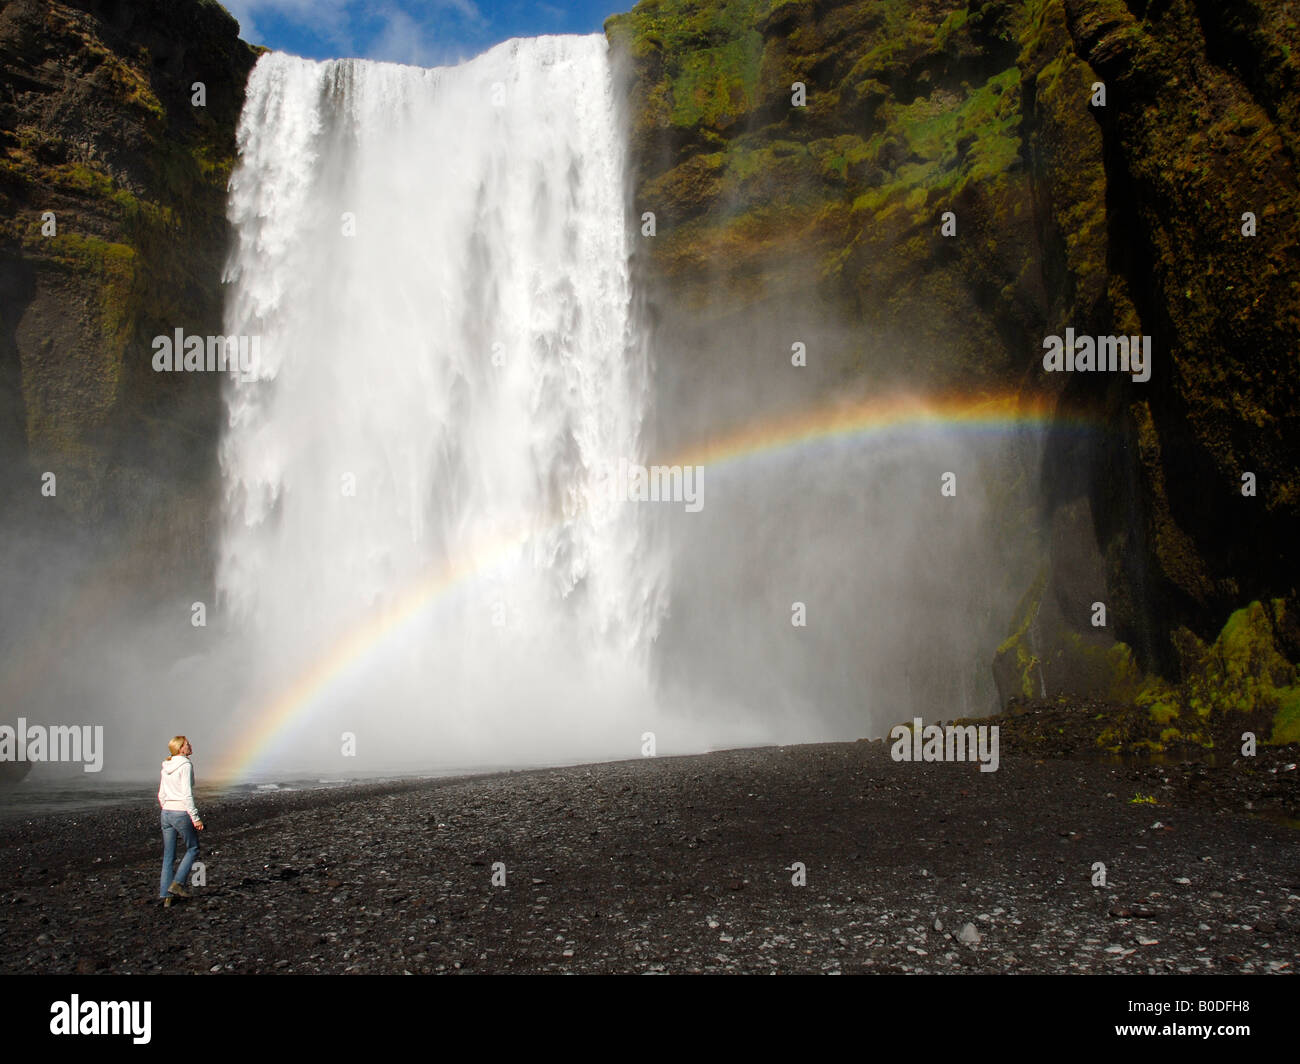 Una cascada, con un joven, en busca de una olla de oro al final del arco iris Foto de stock